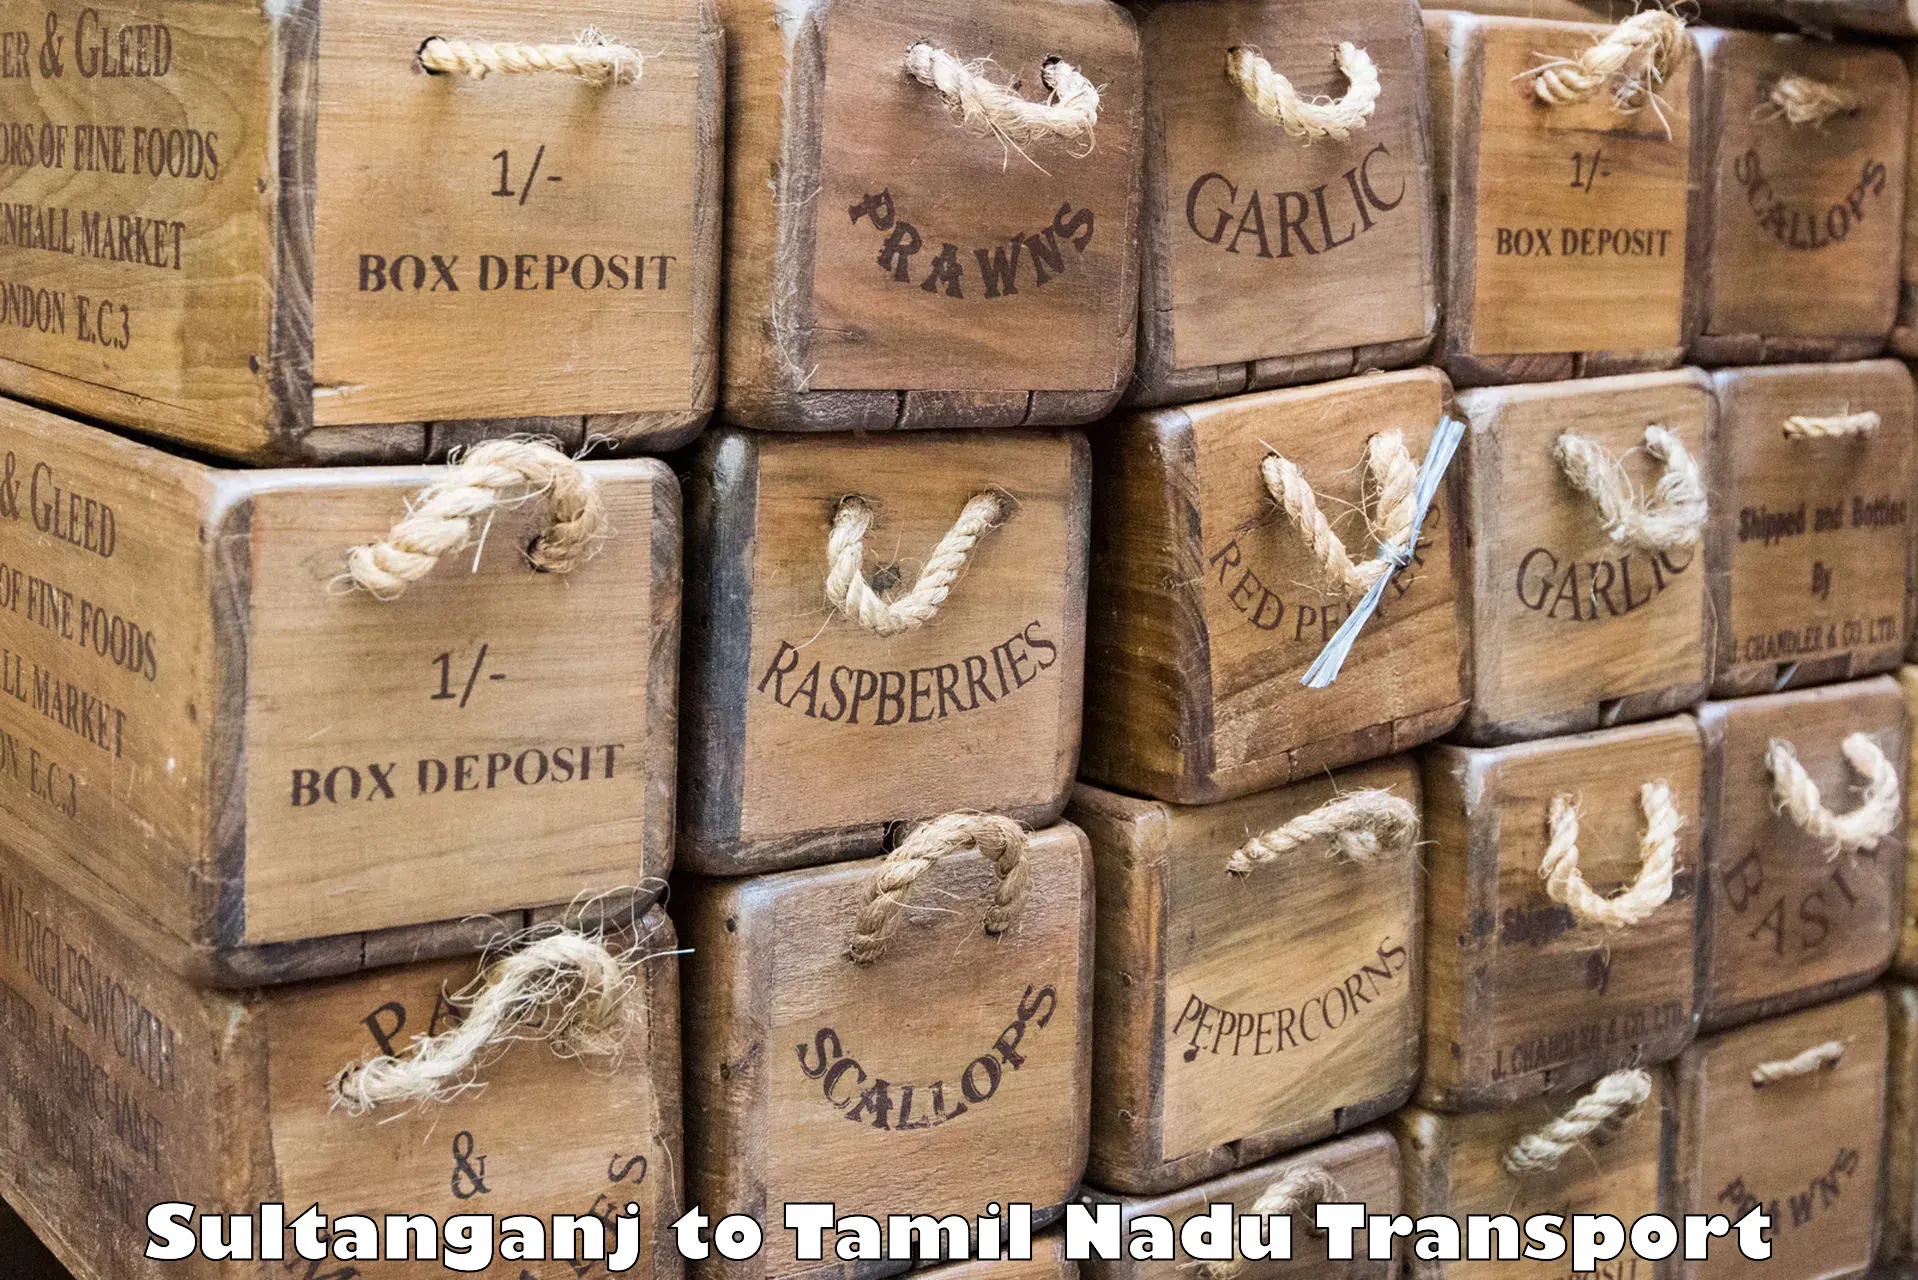 Transport in sharing Sultanganj to Perunali